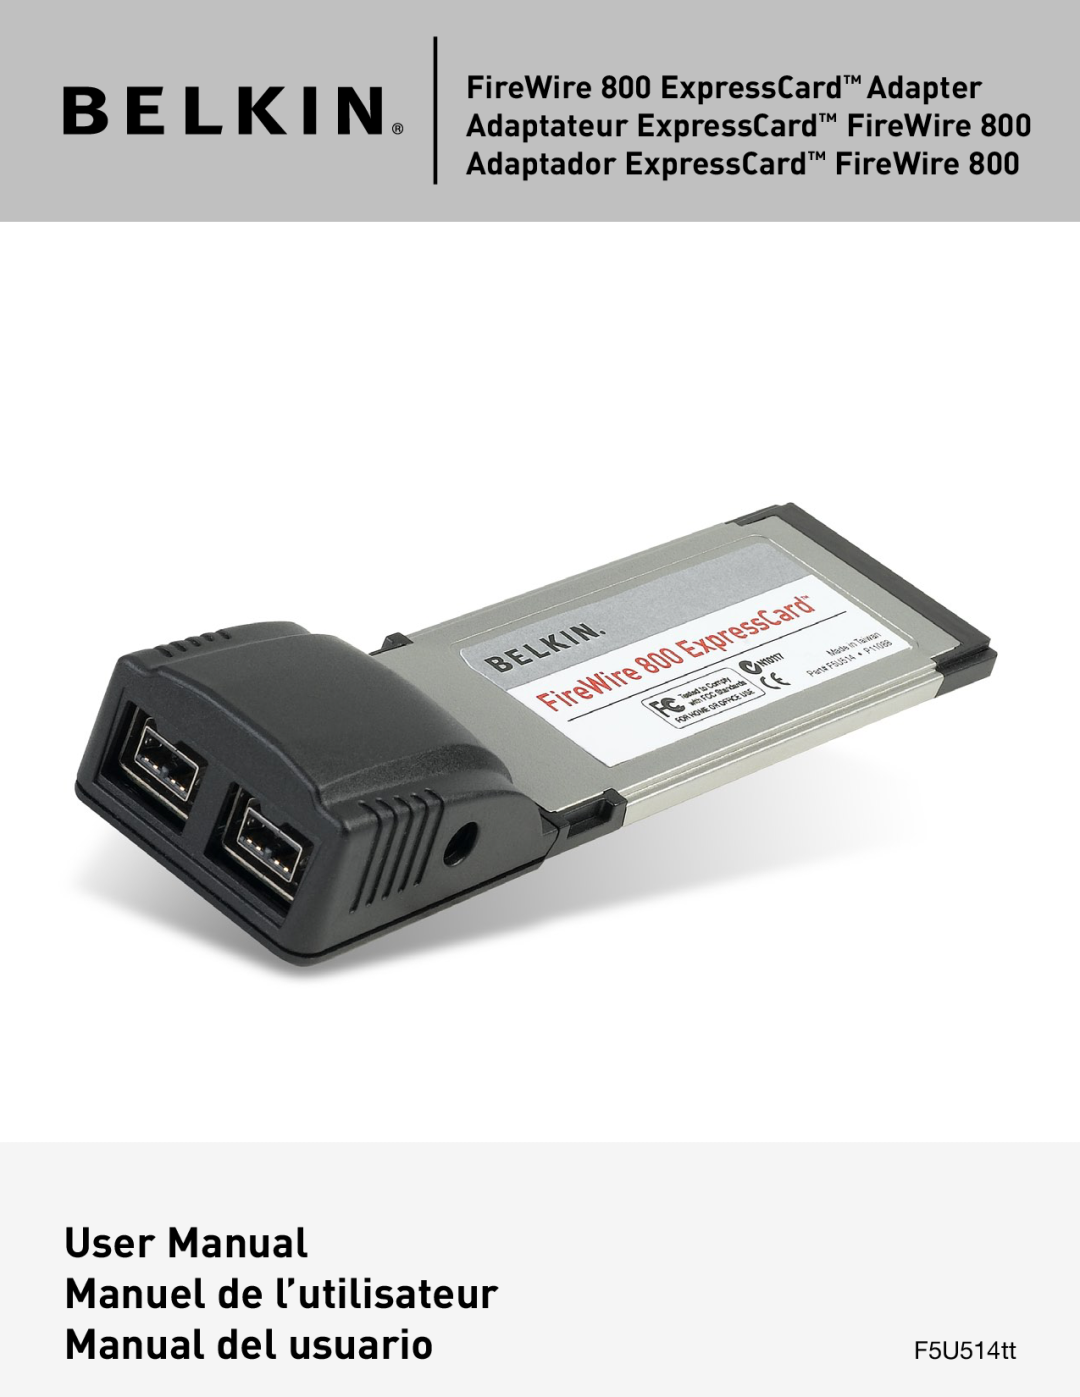 Belkin manual User Manual, Manuel de l’utilisateur, Manual del usuario, Adaptador ExpressCard FireWire, F5U514tt 